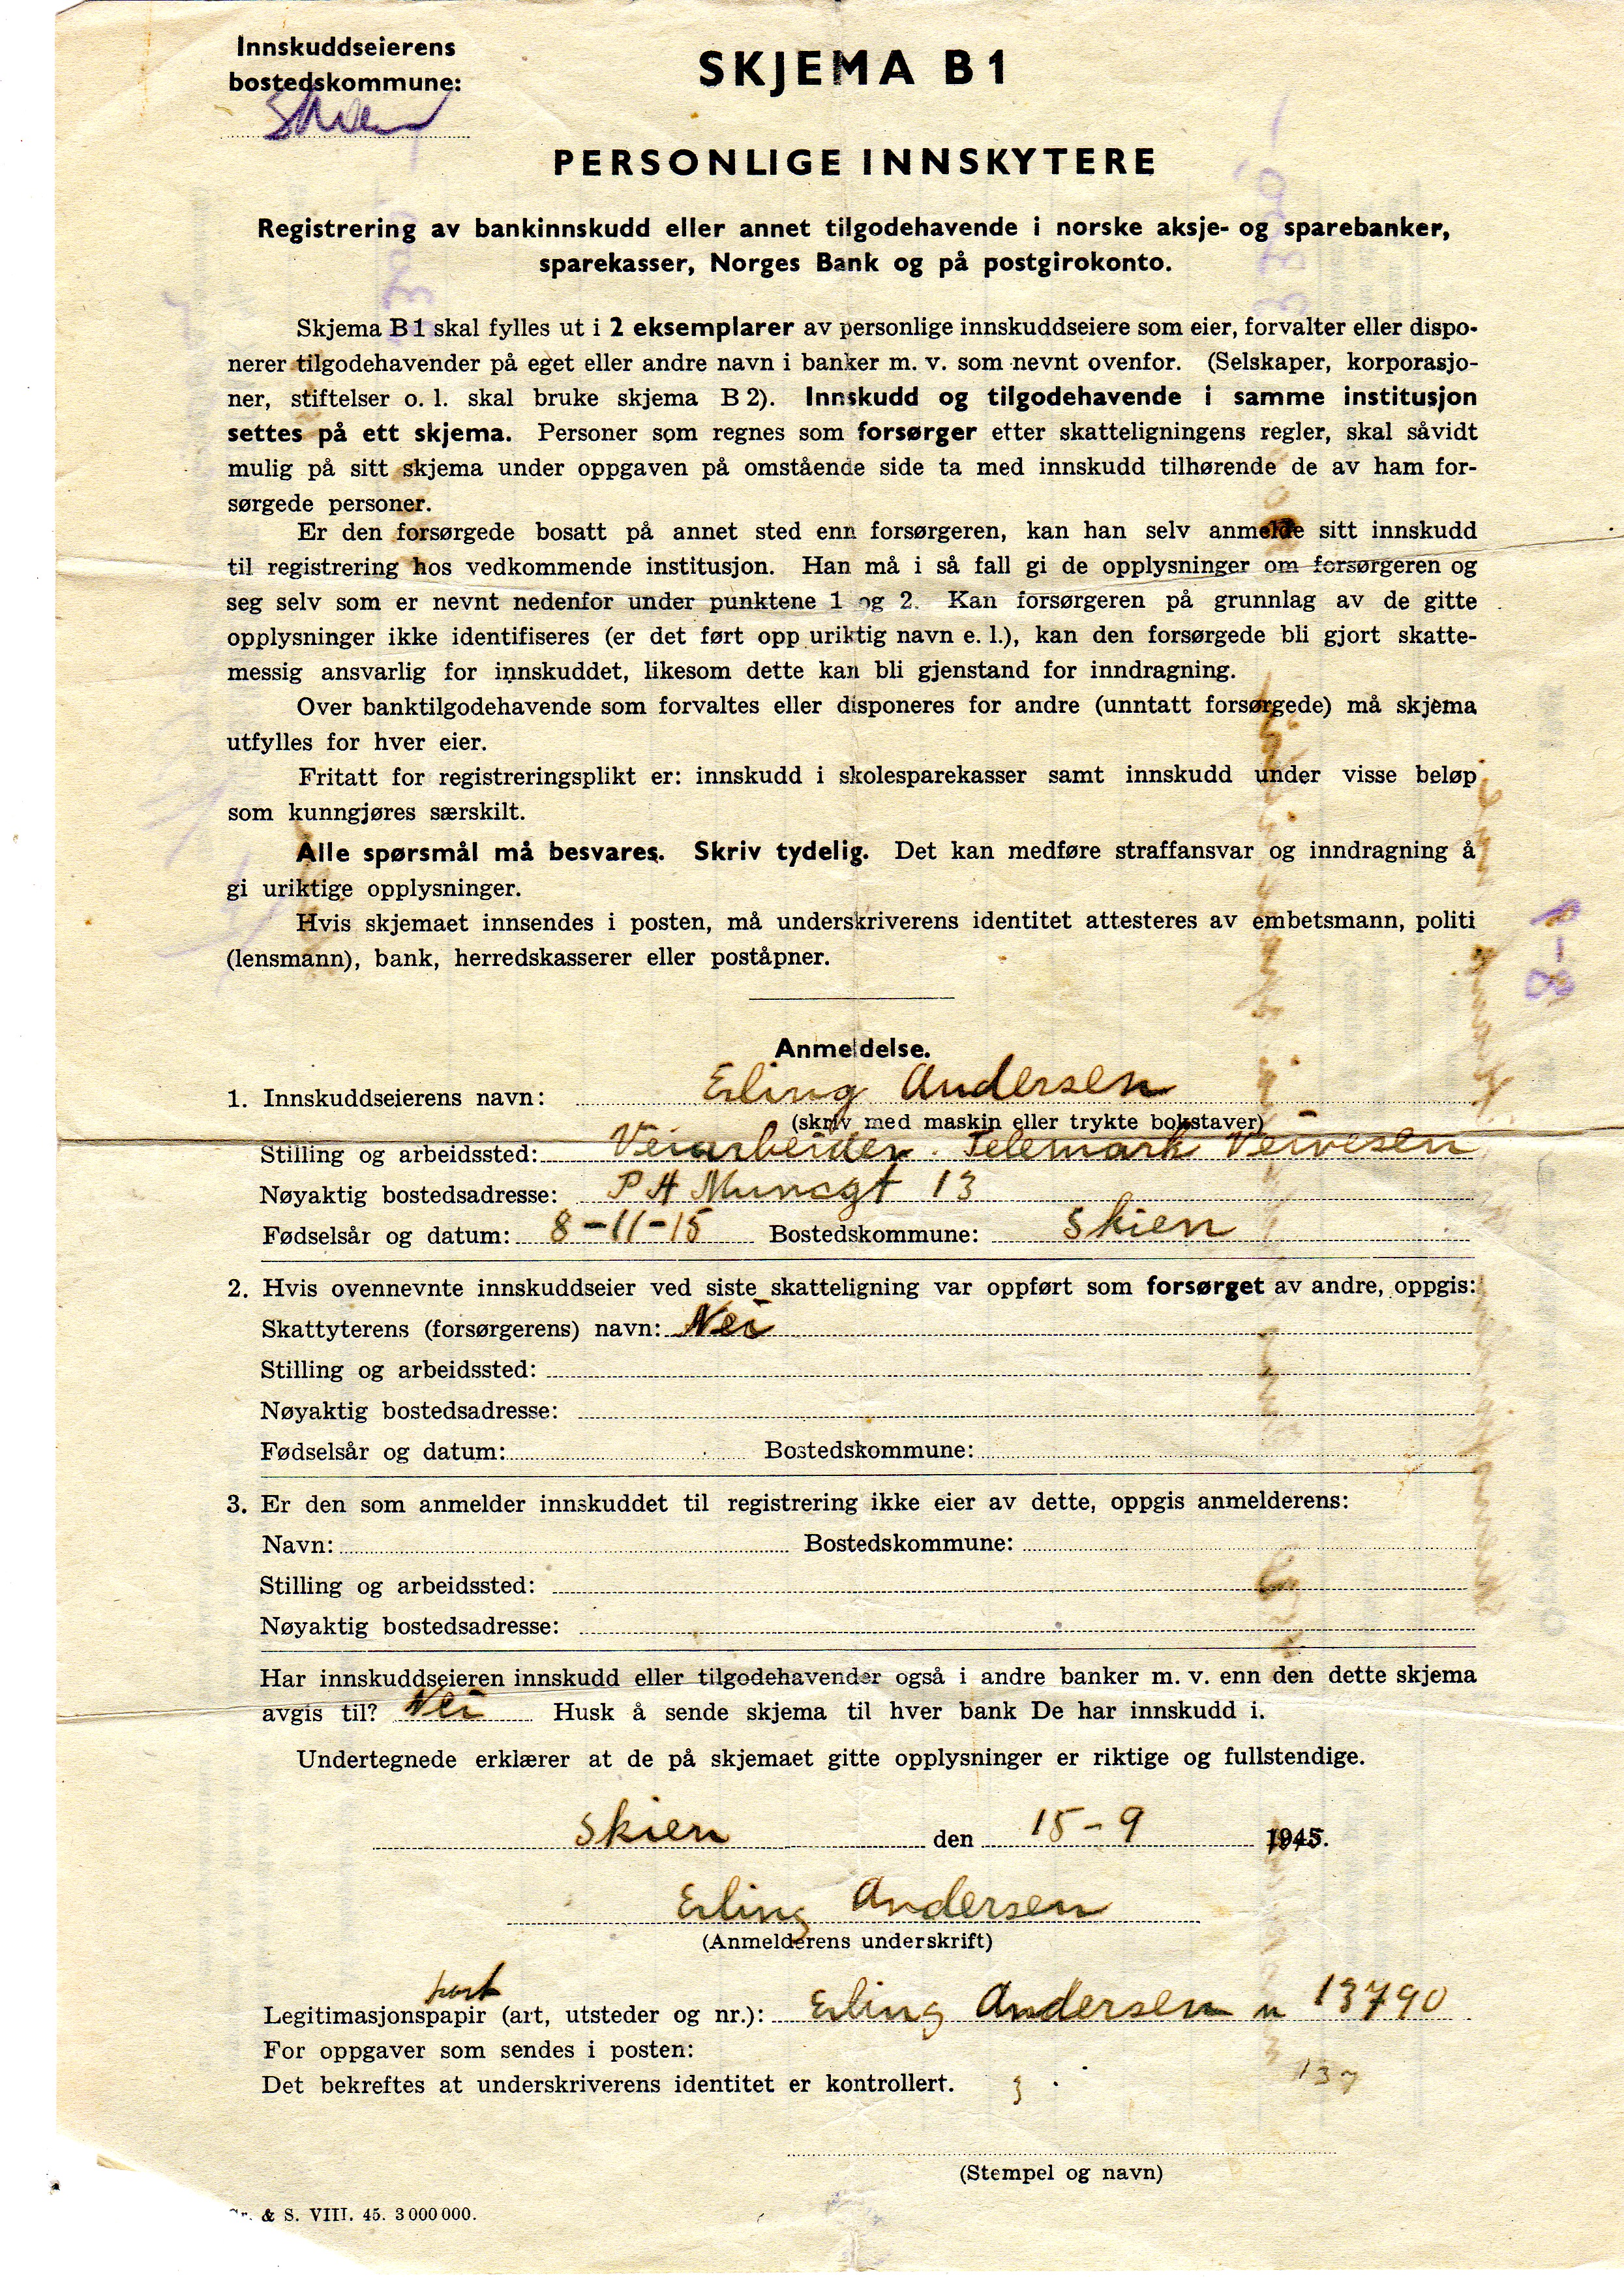 Skjema B1 Personlige innskytere  1945 3300 i Skiensfjordens kredittbank